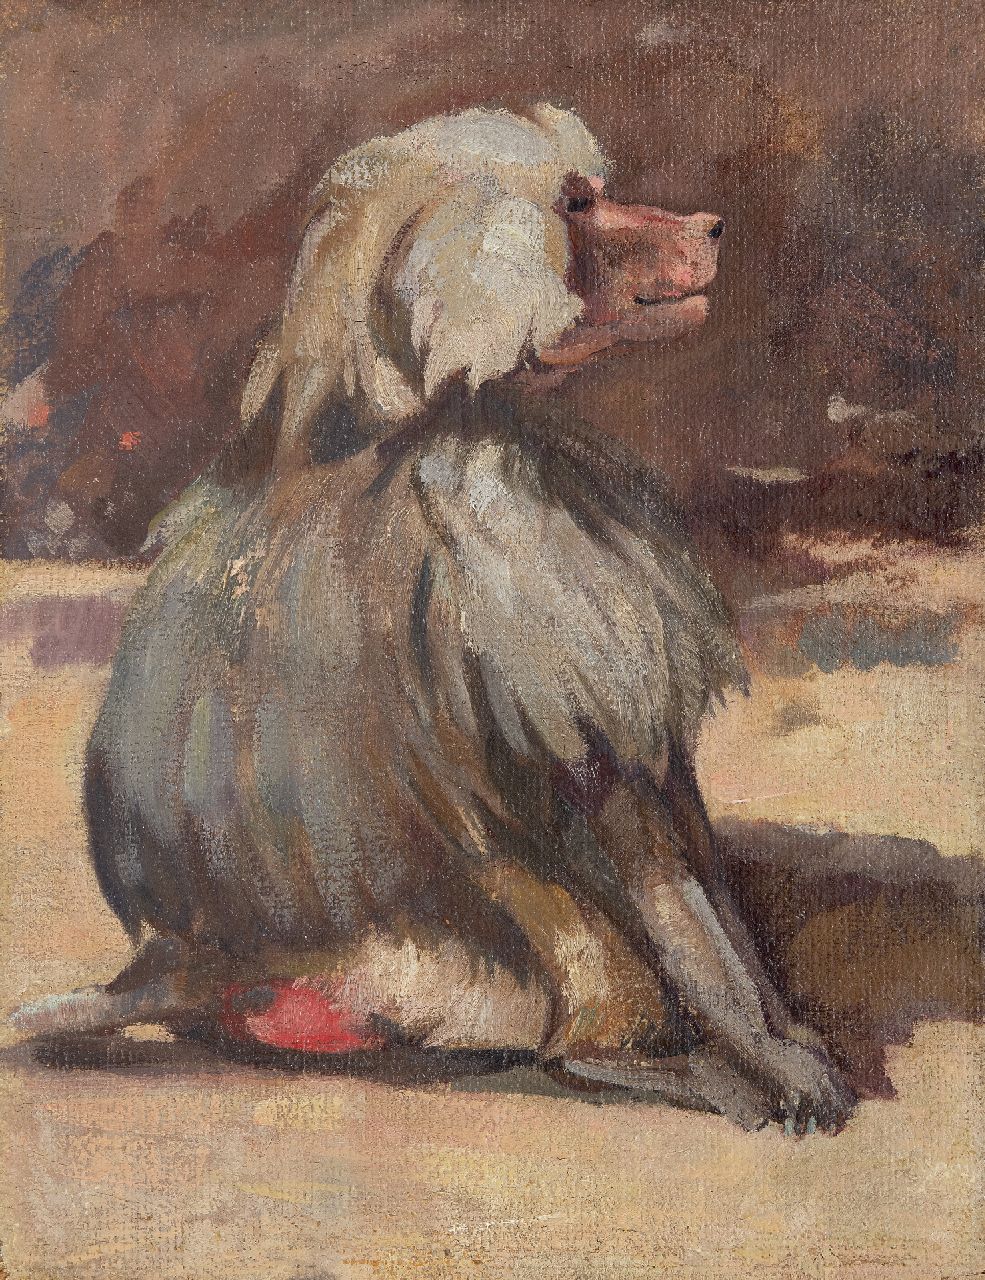 Bruigom M.C.  | Margaretha Cornelia 'Greta' Bruigom, Mantelbaviaan, olieverf op doek op paneel 36,5 x 28,7 cm, gesigneerd verso